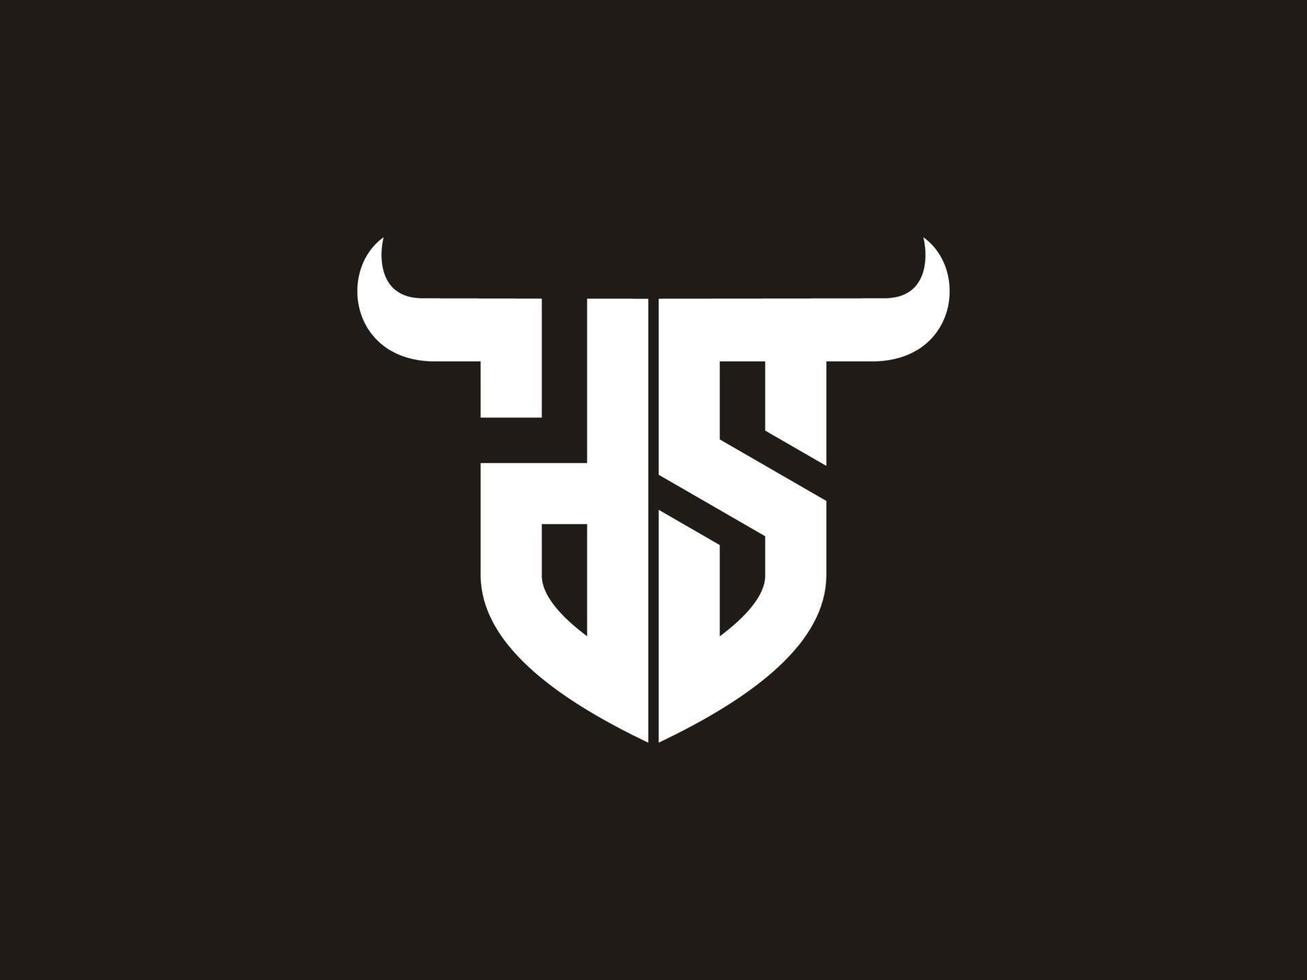 création initiale du logo ds bull. vecteur